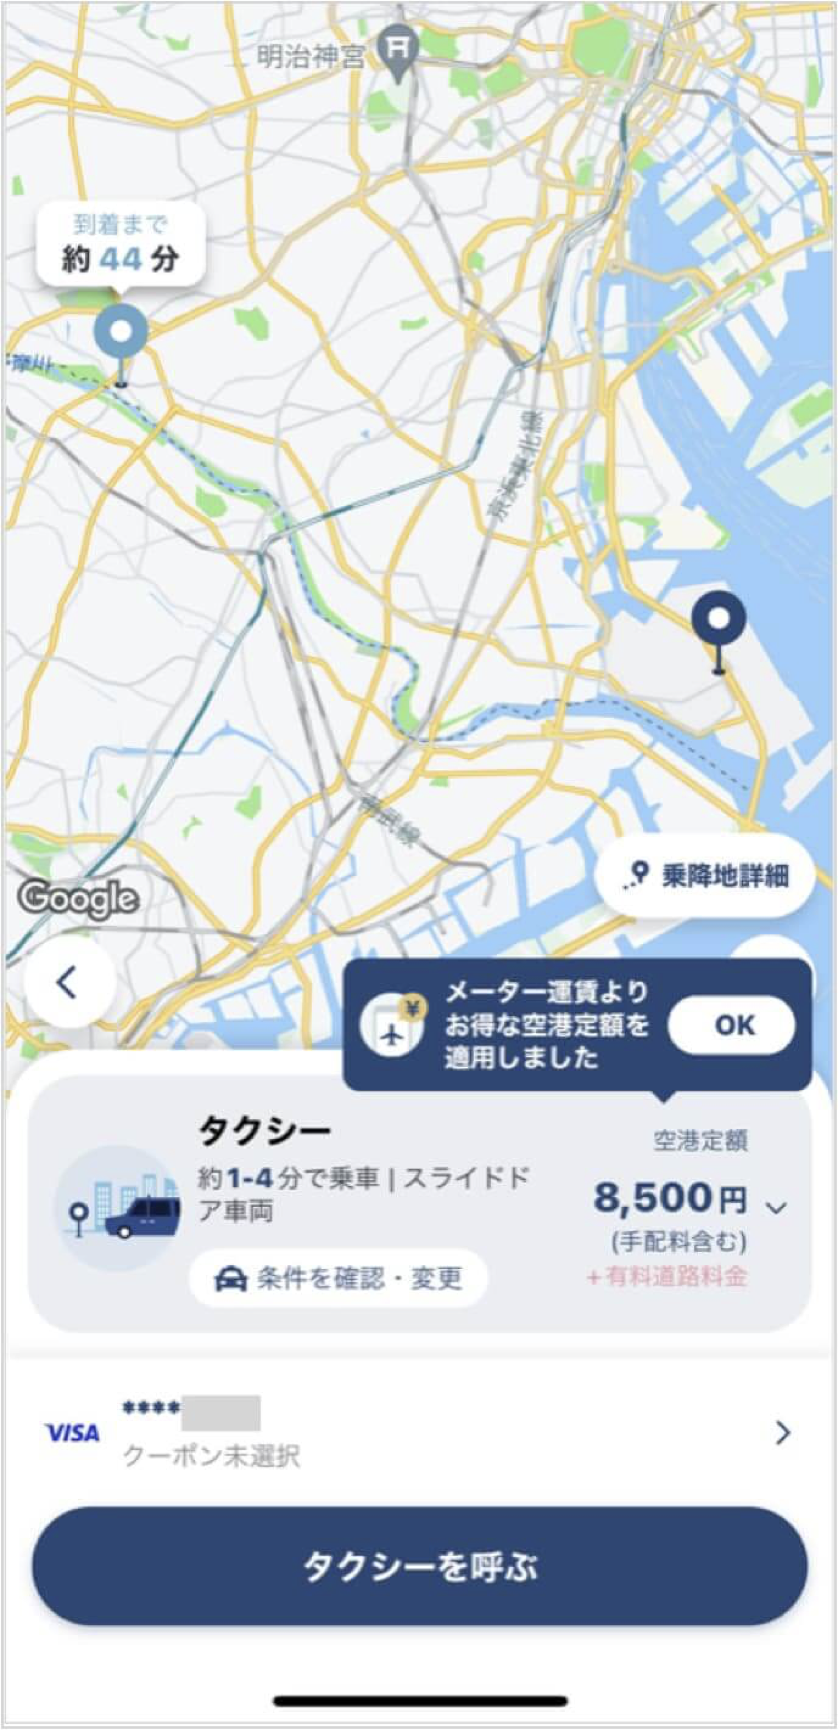 羽田空港から二子玉川までのタクシー料金・所要時間まとめ